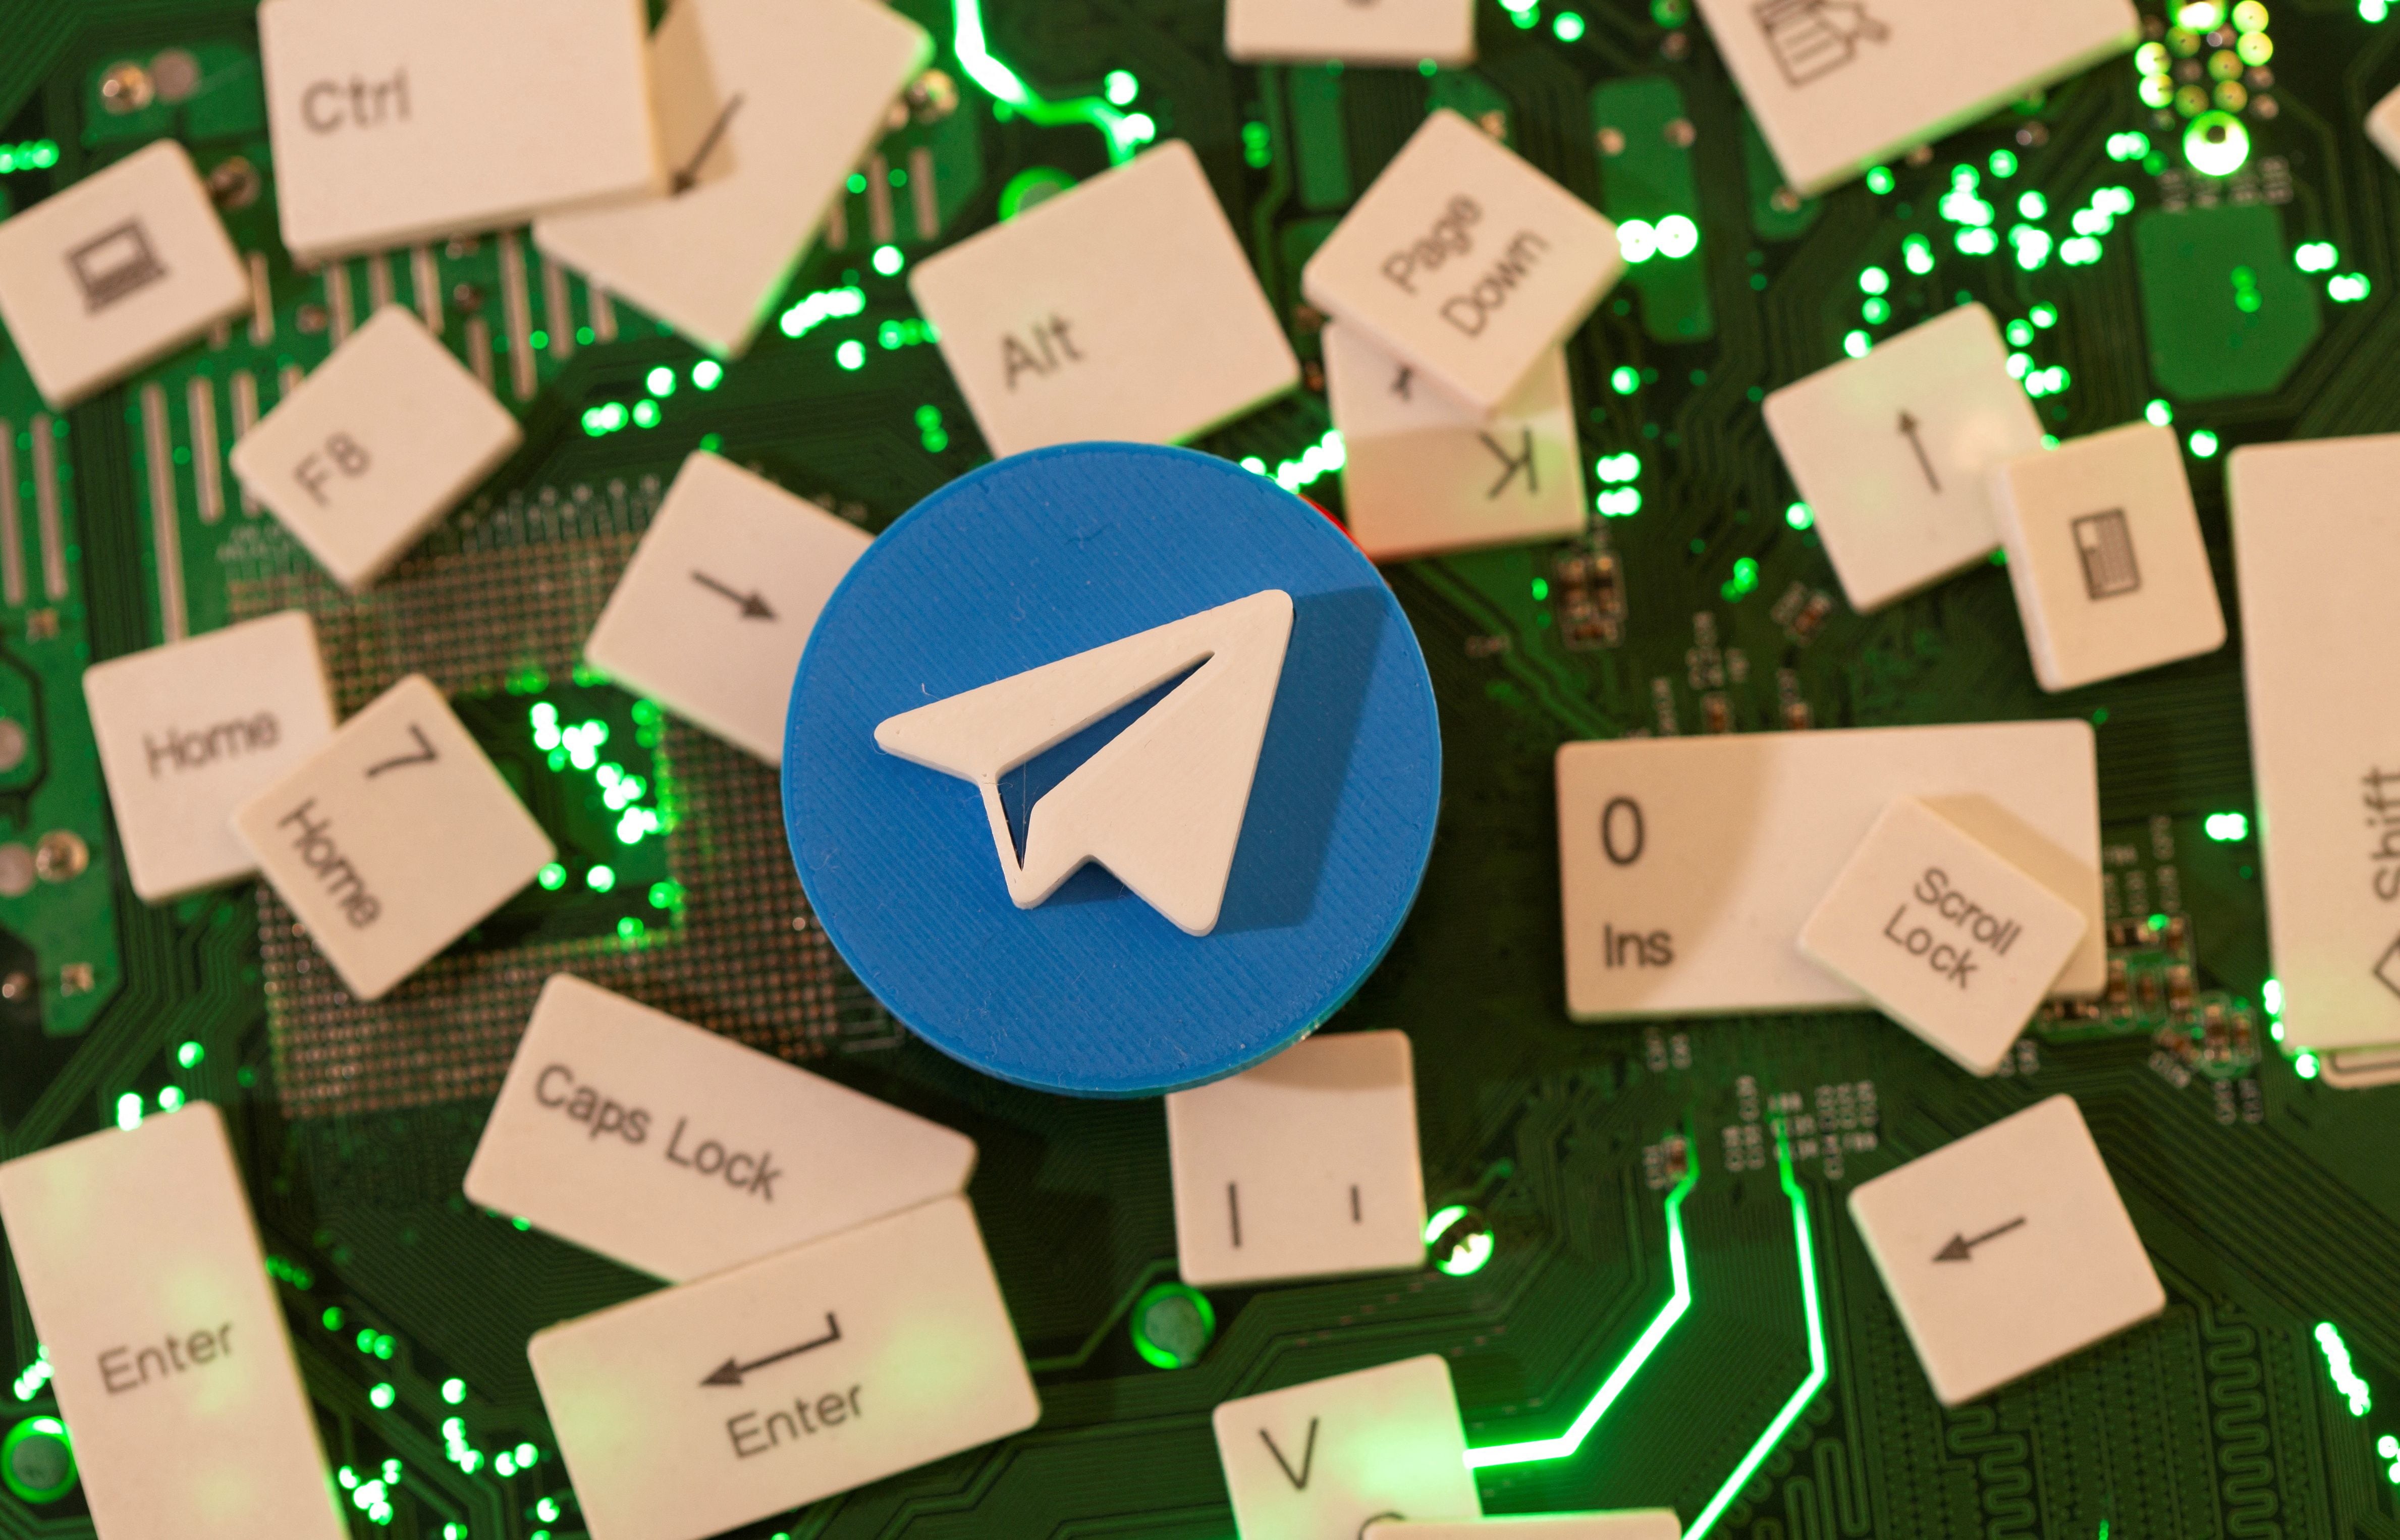 Telegram hizo un llamado a solo creer en información verificada (Foto: REUTERS/Dado Ruvic/Illustration/File Photo)